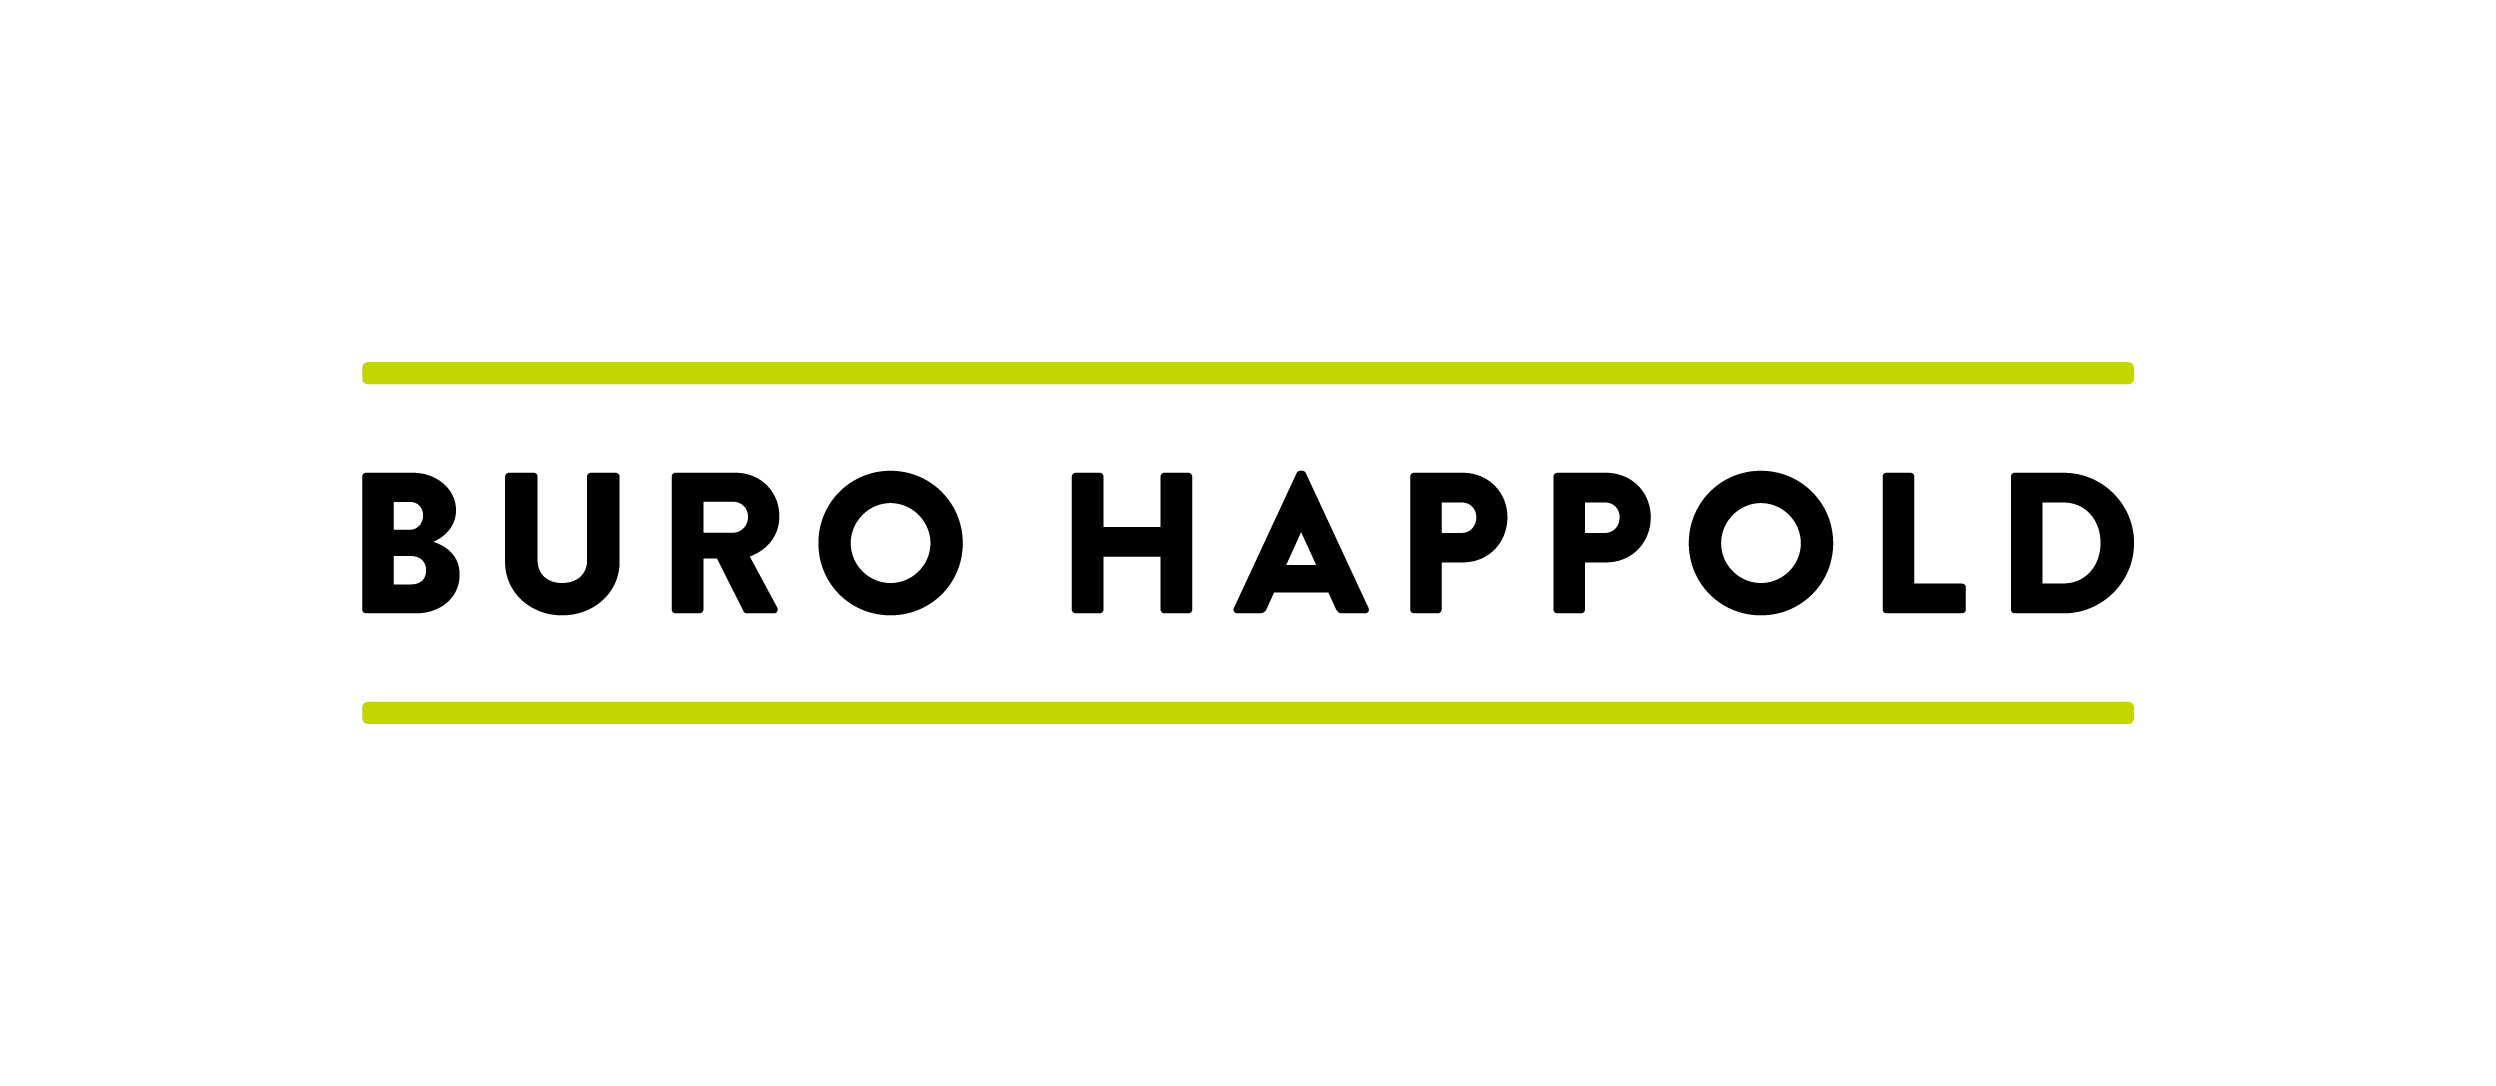 Buro Happold logo on white background